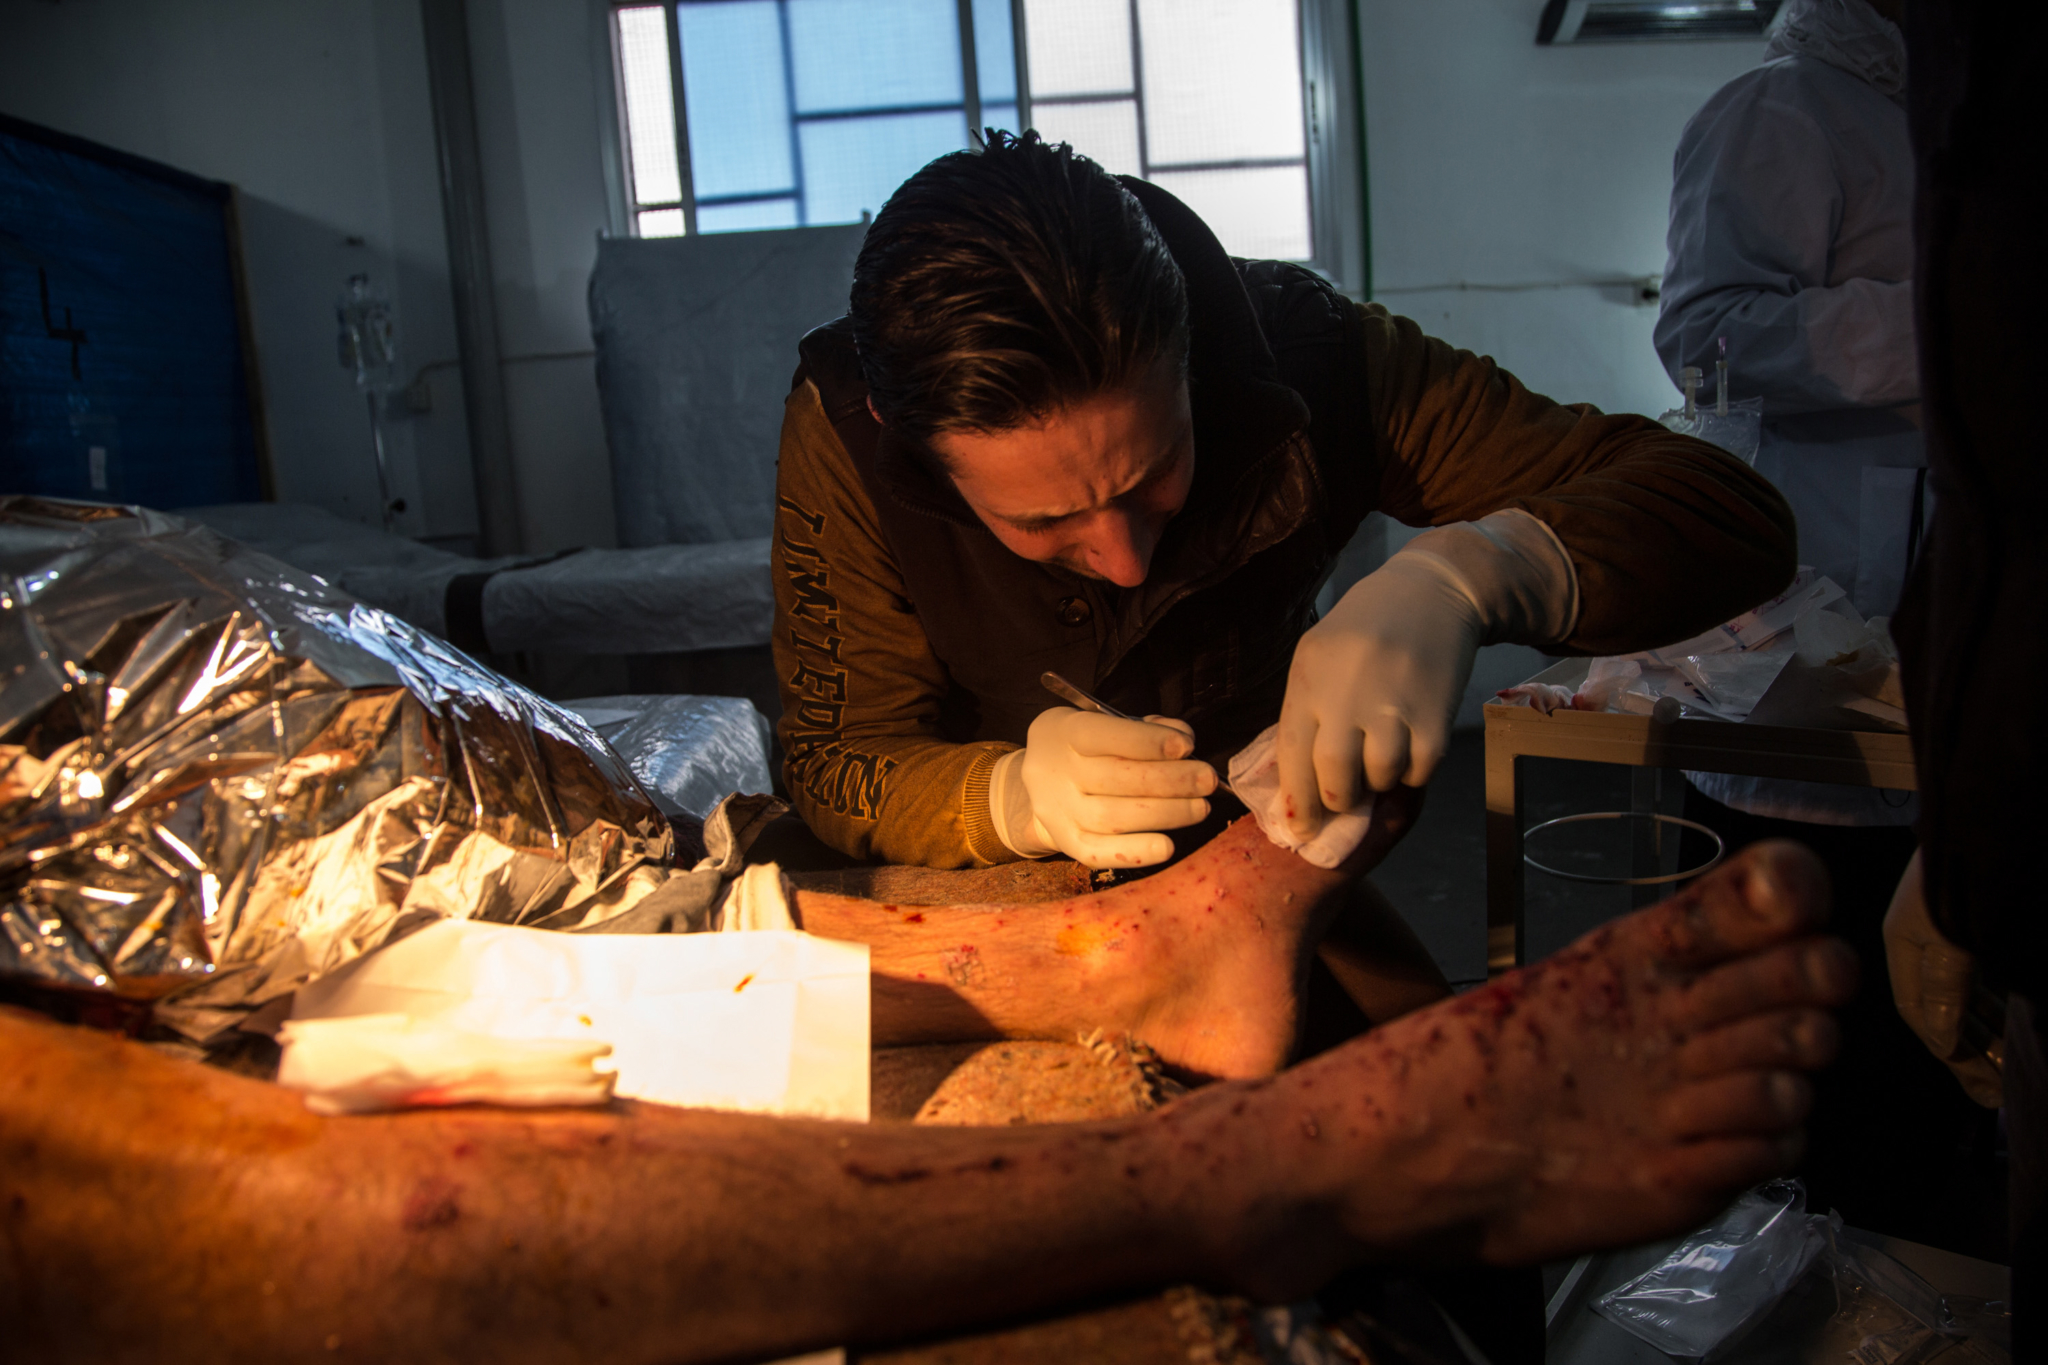 Um enfermeiro sírio cuida de dezenas de pequenos ferimentos de um paciente no hospital de MSF, no norte da Síria. A pessoa foi ferida por estilhaços de uma granada após a explosão de um tanque próximo de onde ela estava.